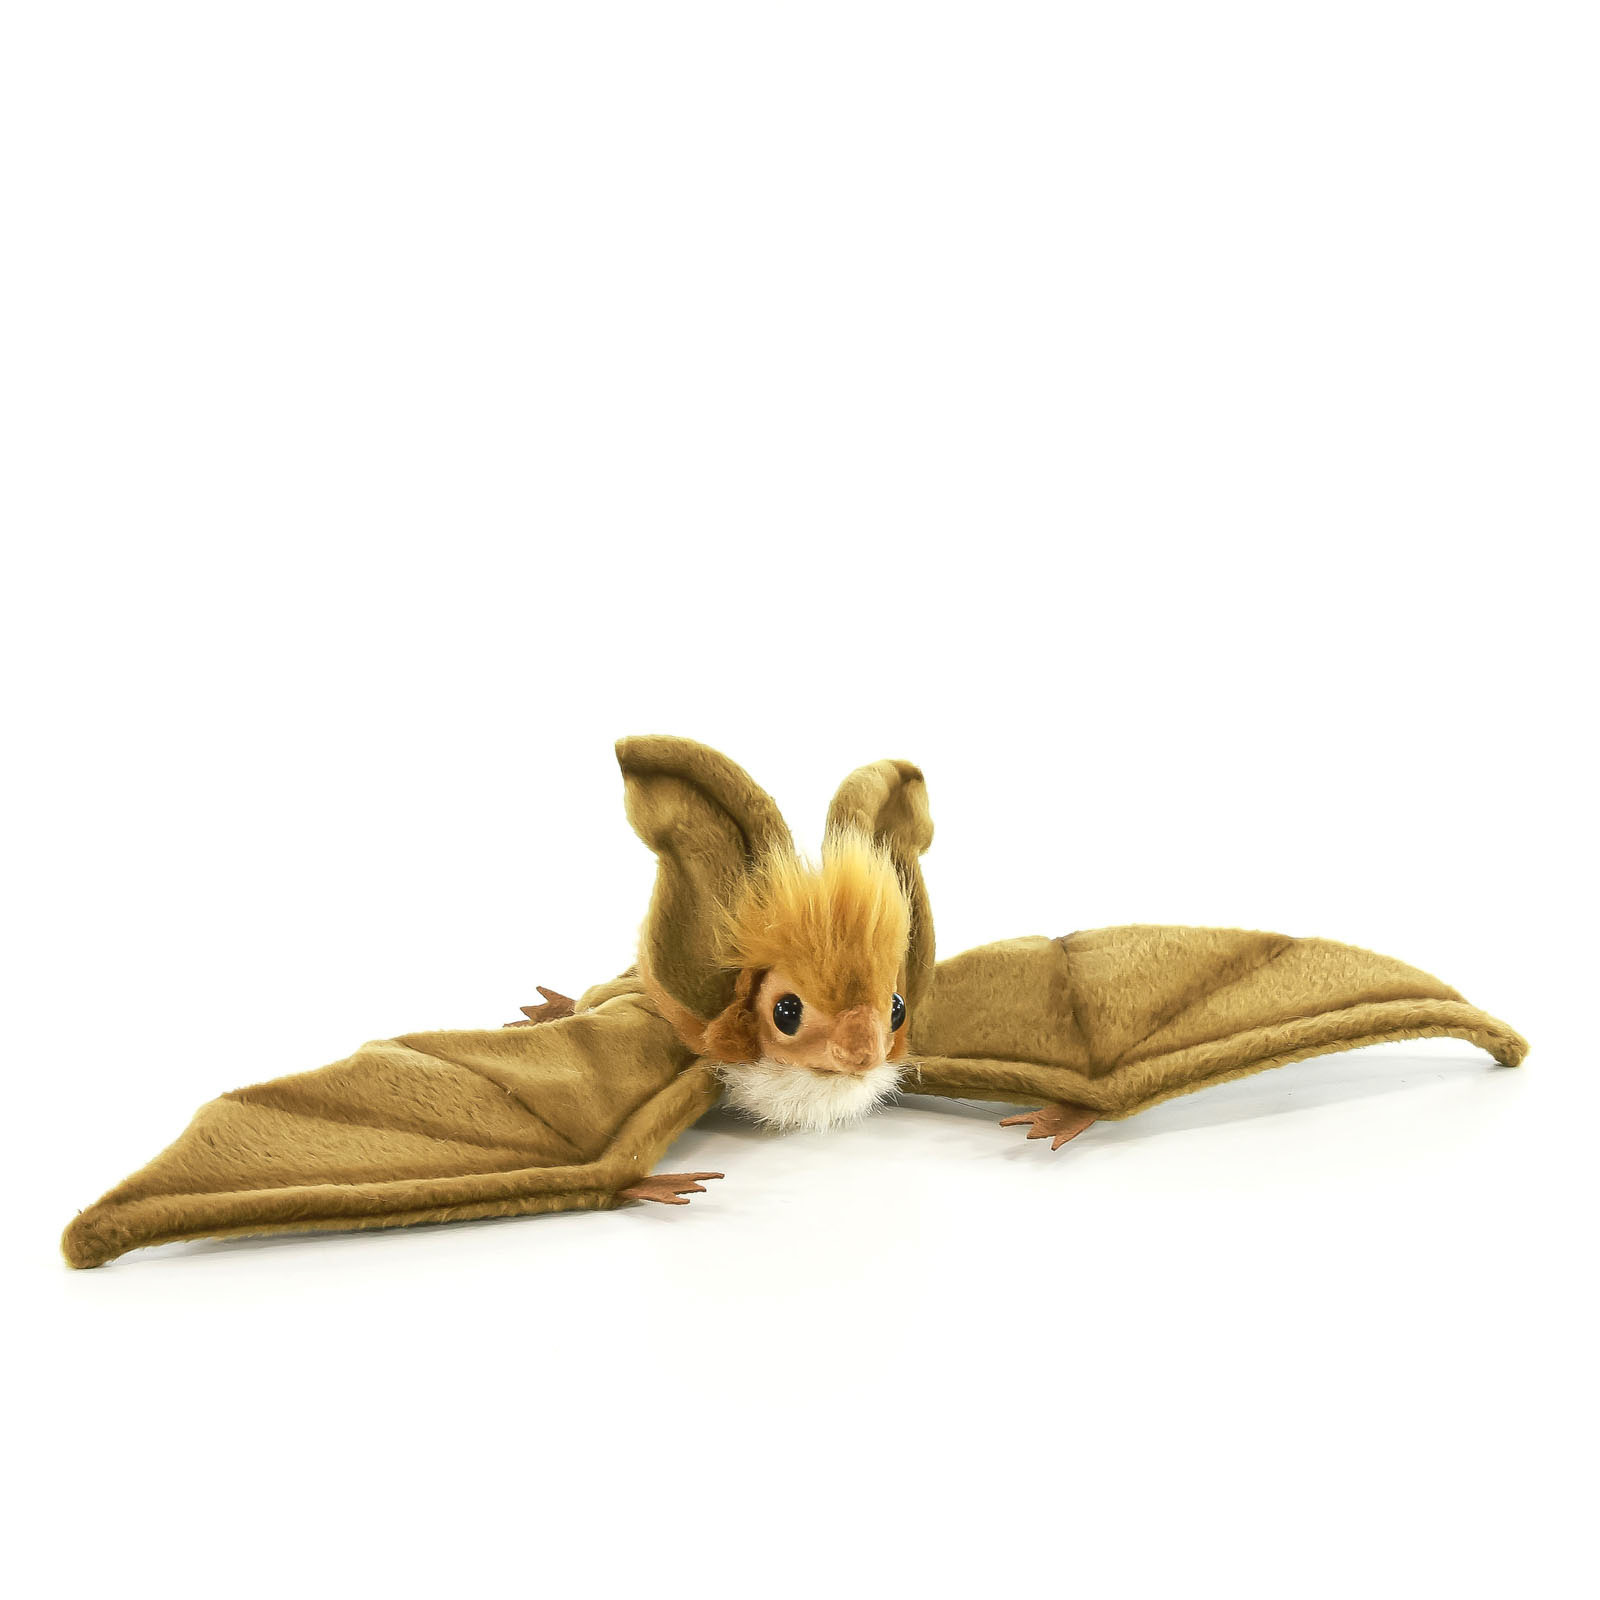 Реалистичная мягкая игрушка Hansa Creation Коричневая летучая мышь парящая, 37 см мягкая игрушка floppys мышь 25 см k8157 pt